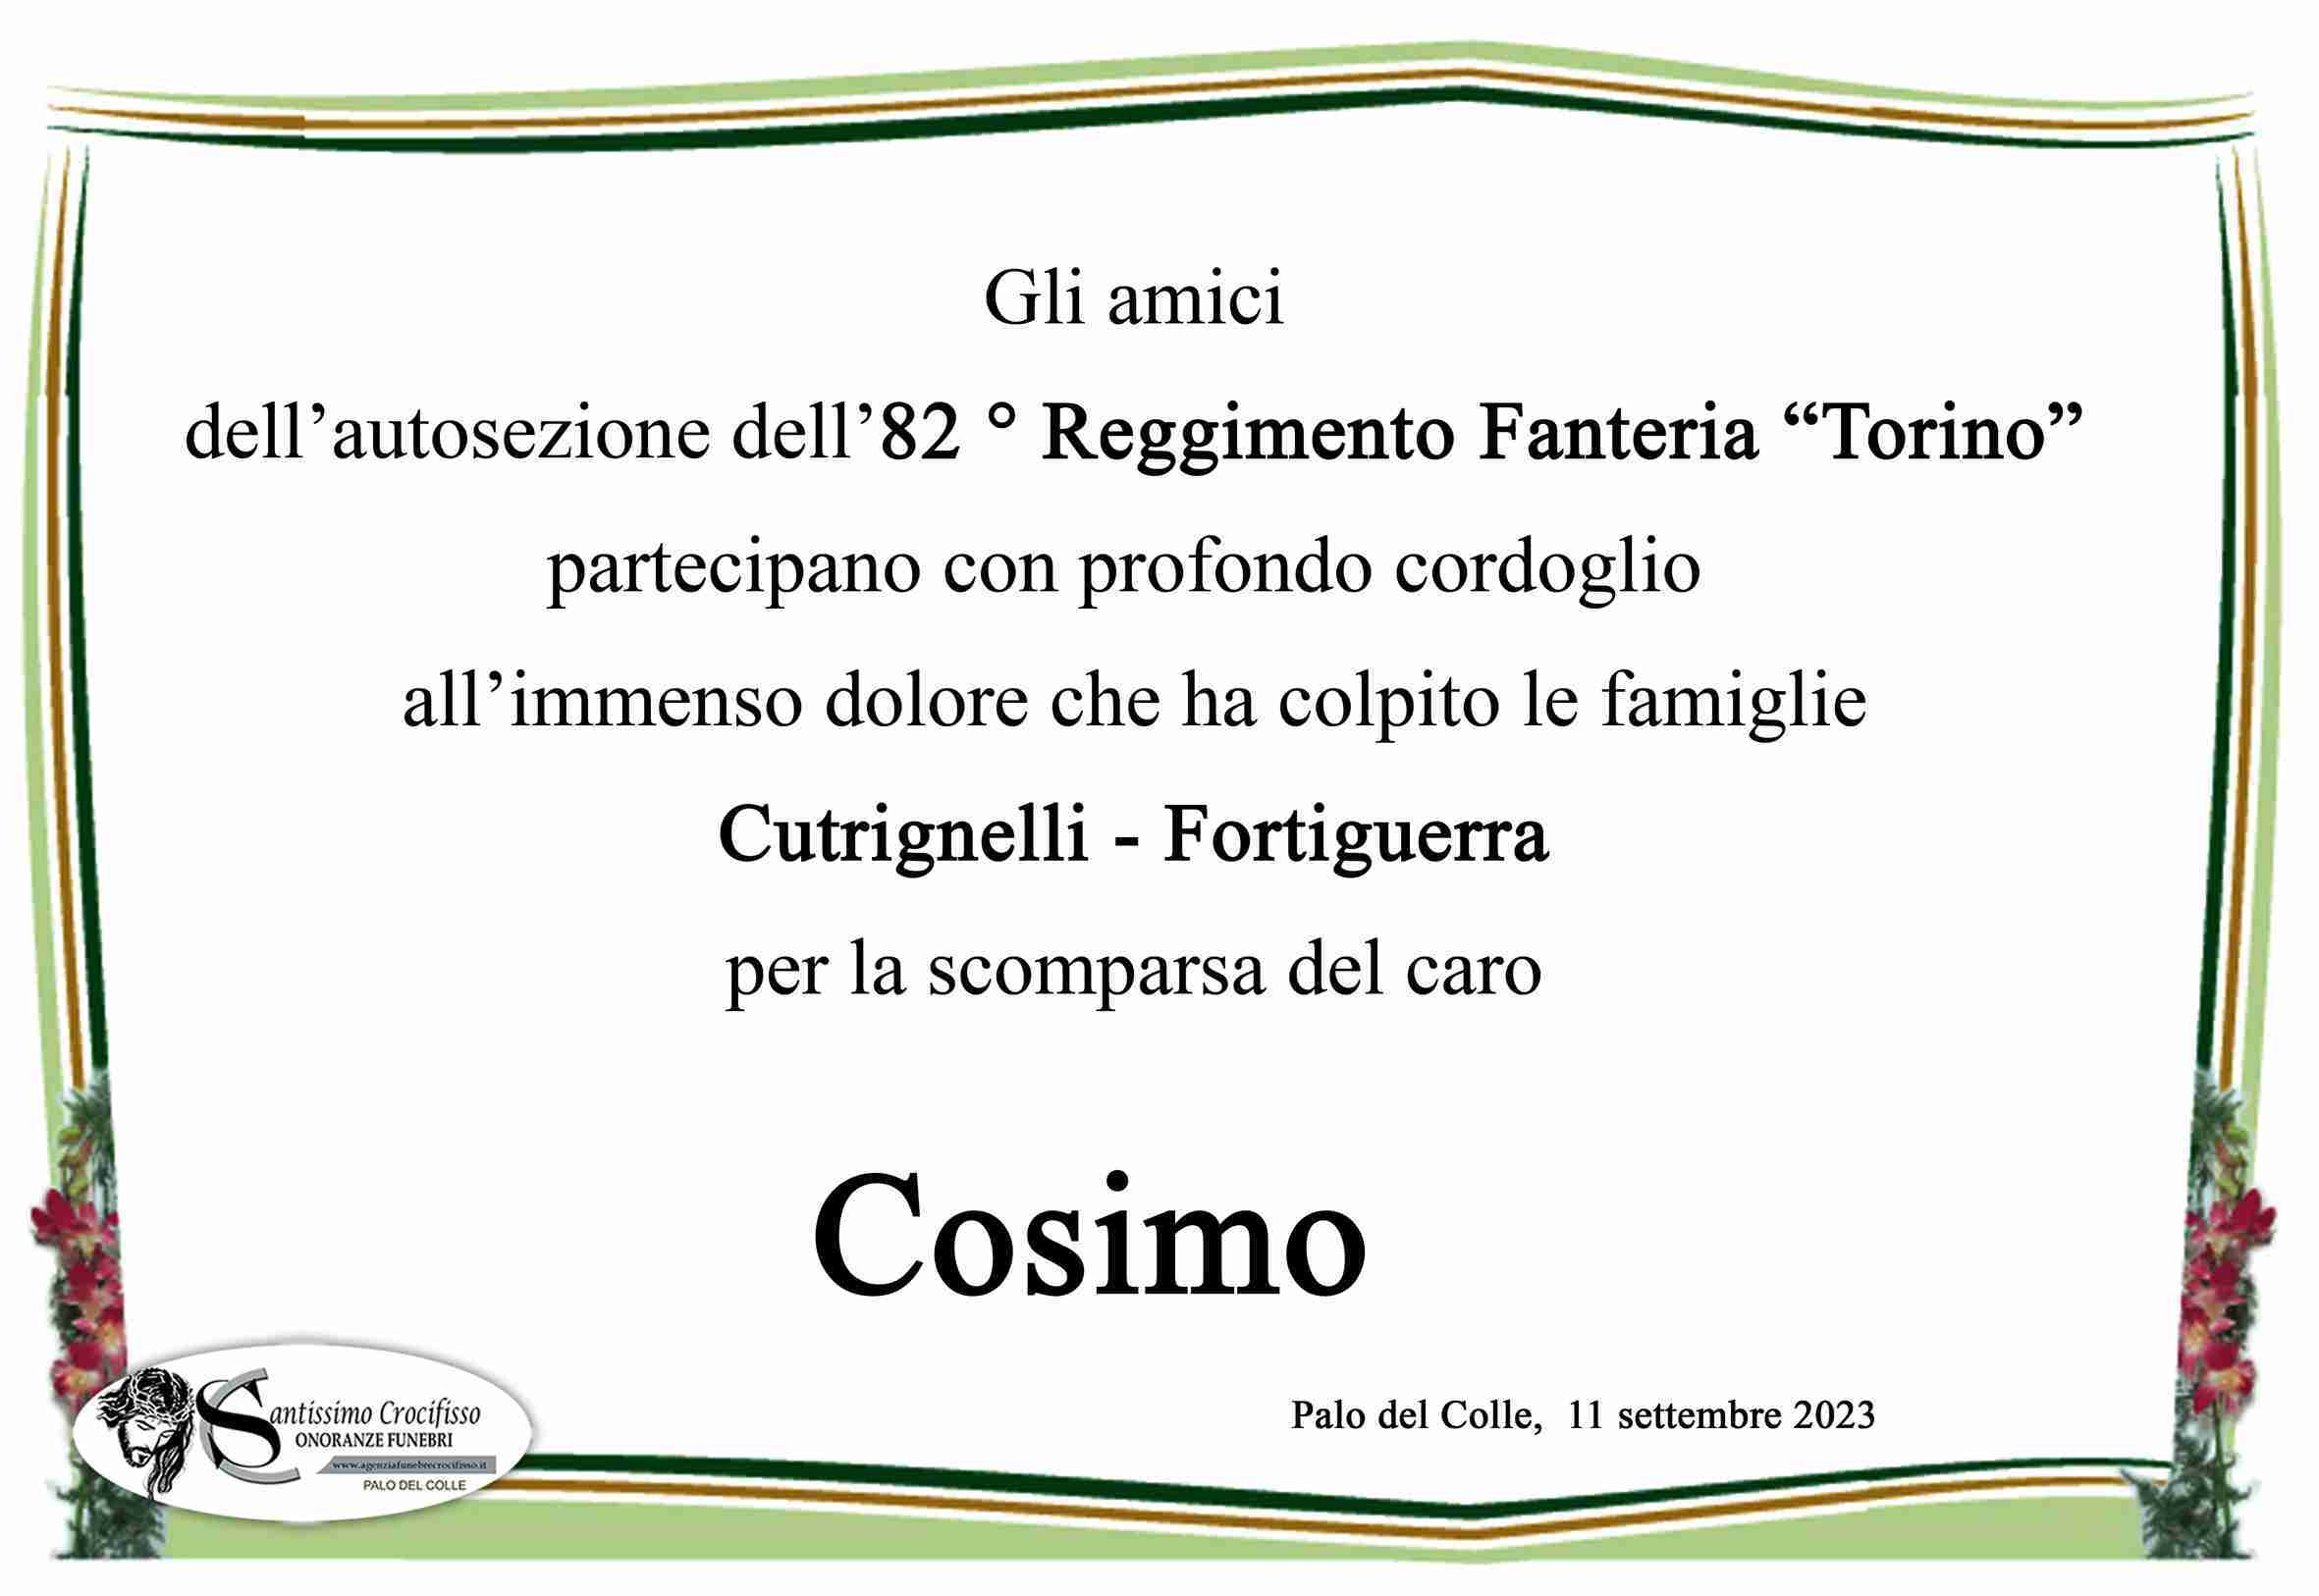 Cosimo